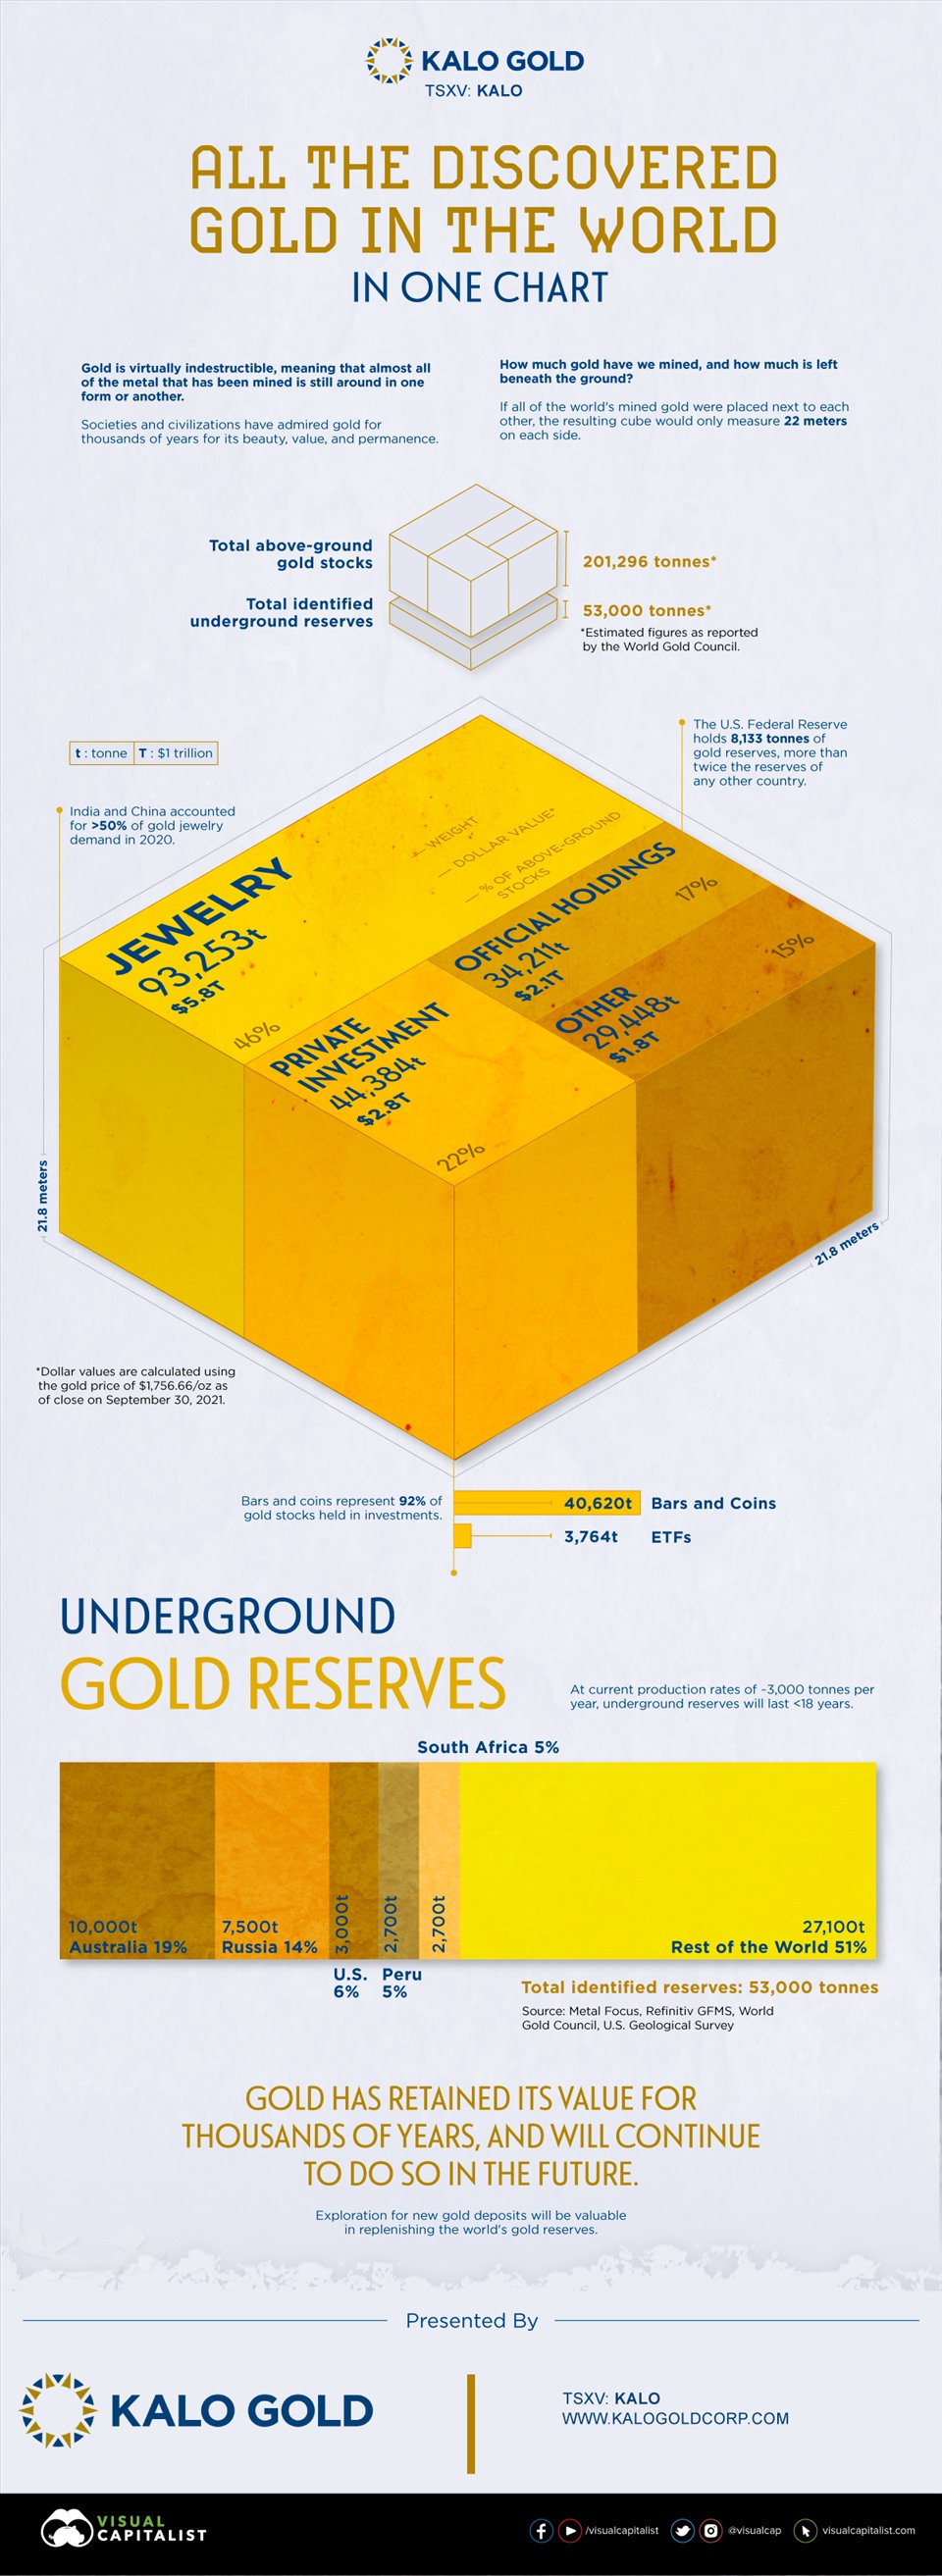 Đồ họa của Kalo Gold cho thấy tổng lượng vàng trên thế giới.